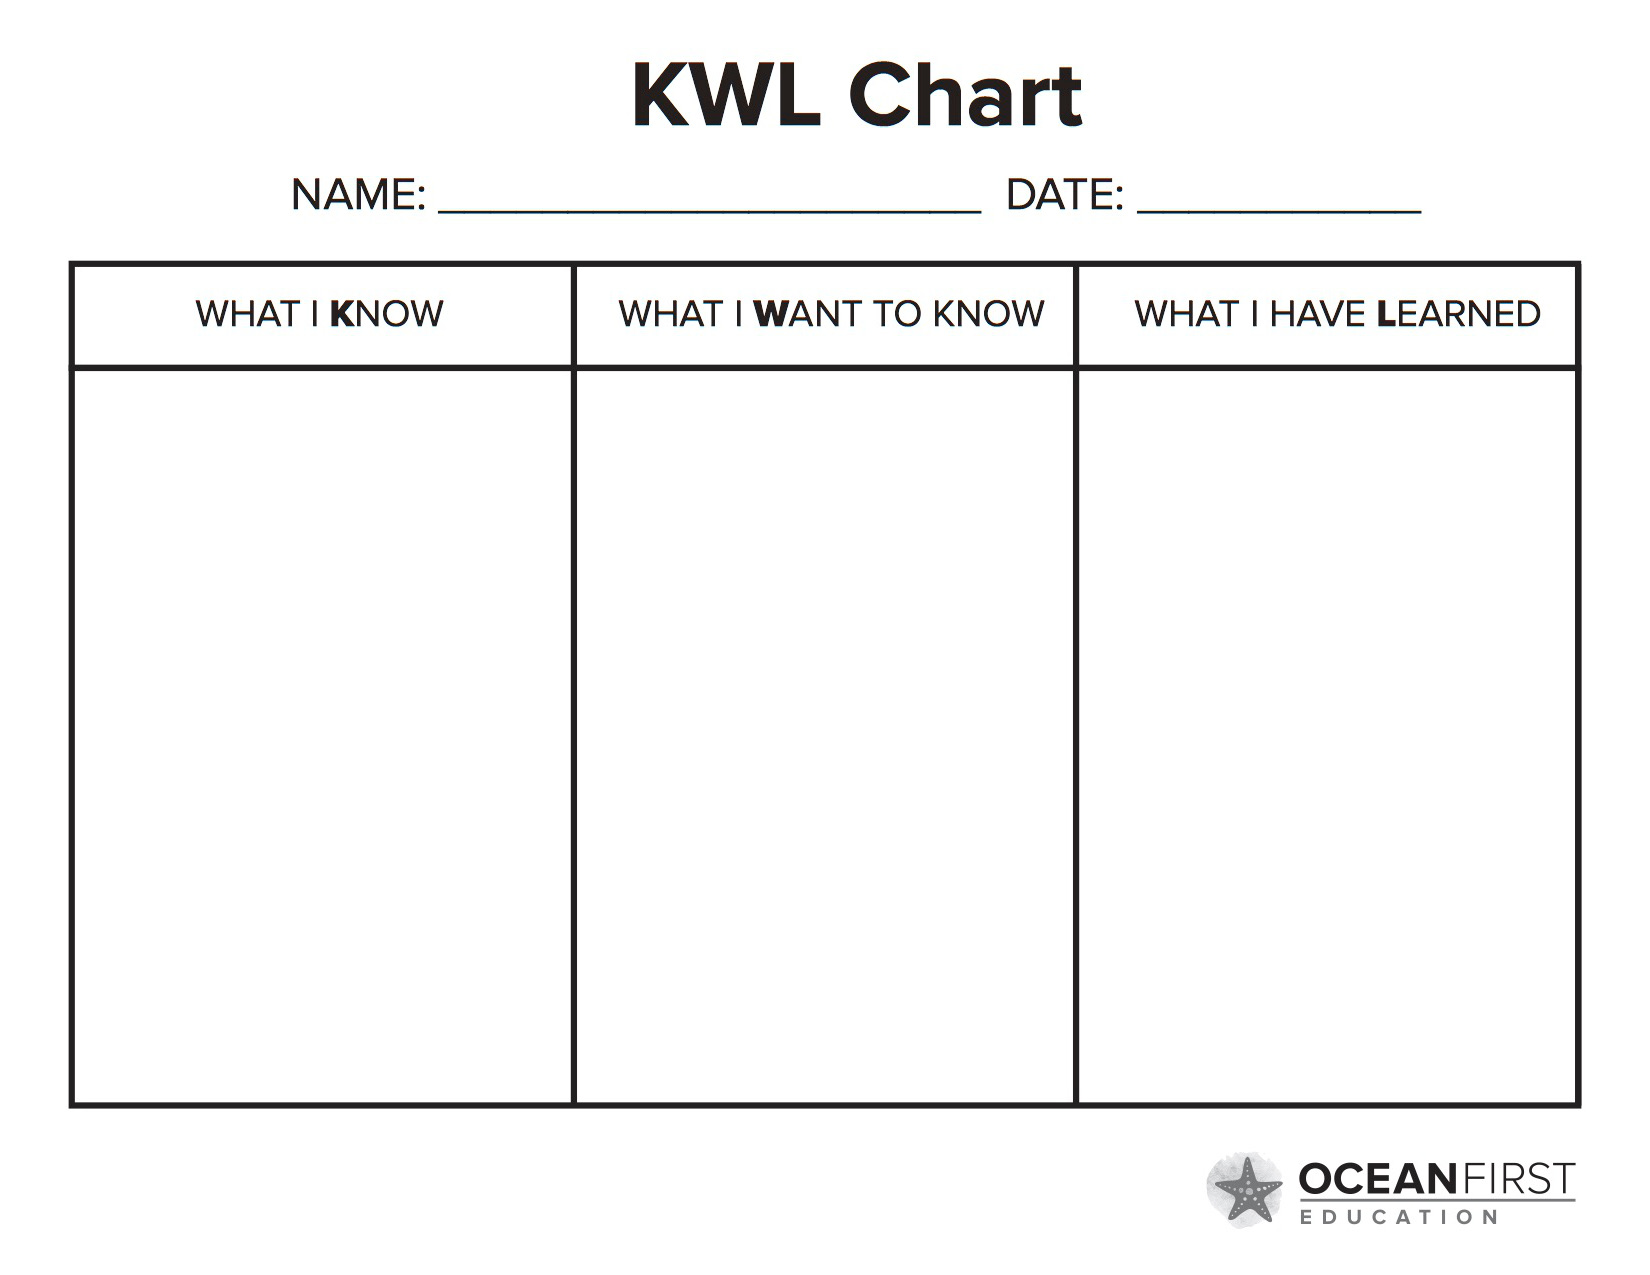 Want to know the name. Таблица KWL. KWL. KWL-диаграммы. Стратегия KWL.